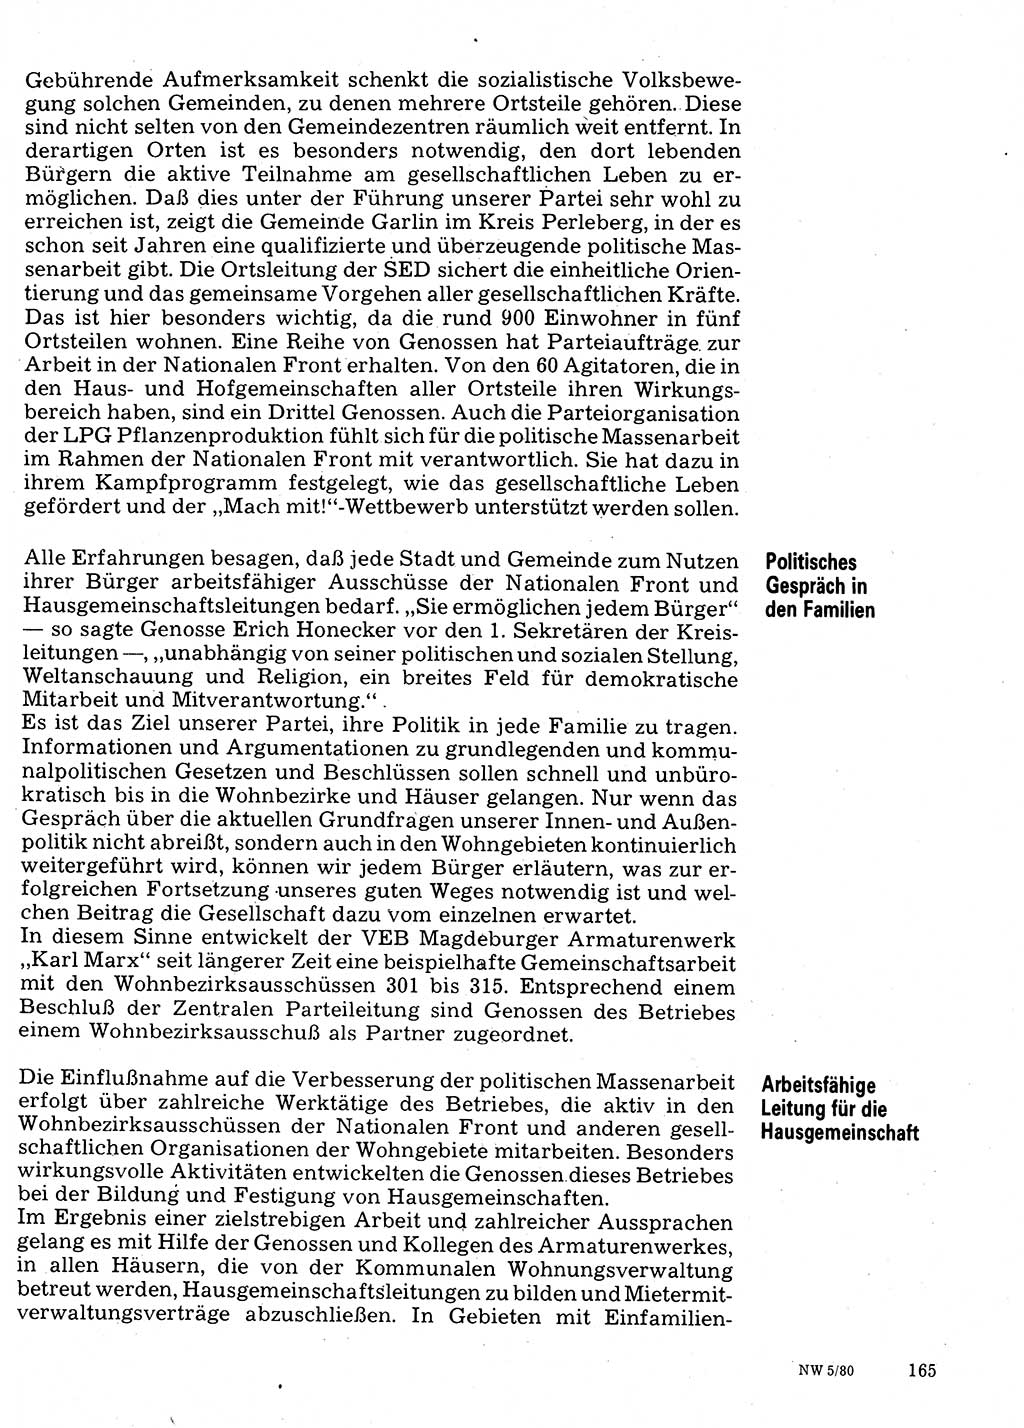 Neuer Weg (NW), Organ des Zentralkomitees (ZK) der SED (Sozialistische Einheitspartei Deutschlands) für Fragen des Parteilebens, 35. Jahrgang [Deutsche Demokratische Republik (DDR)] 1980, Seite 165 (NW ZK SED DDR 1980, S. 165)